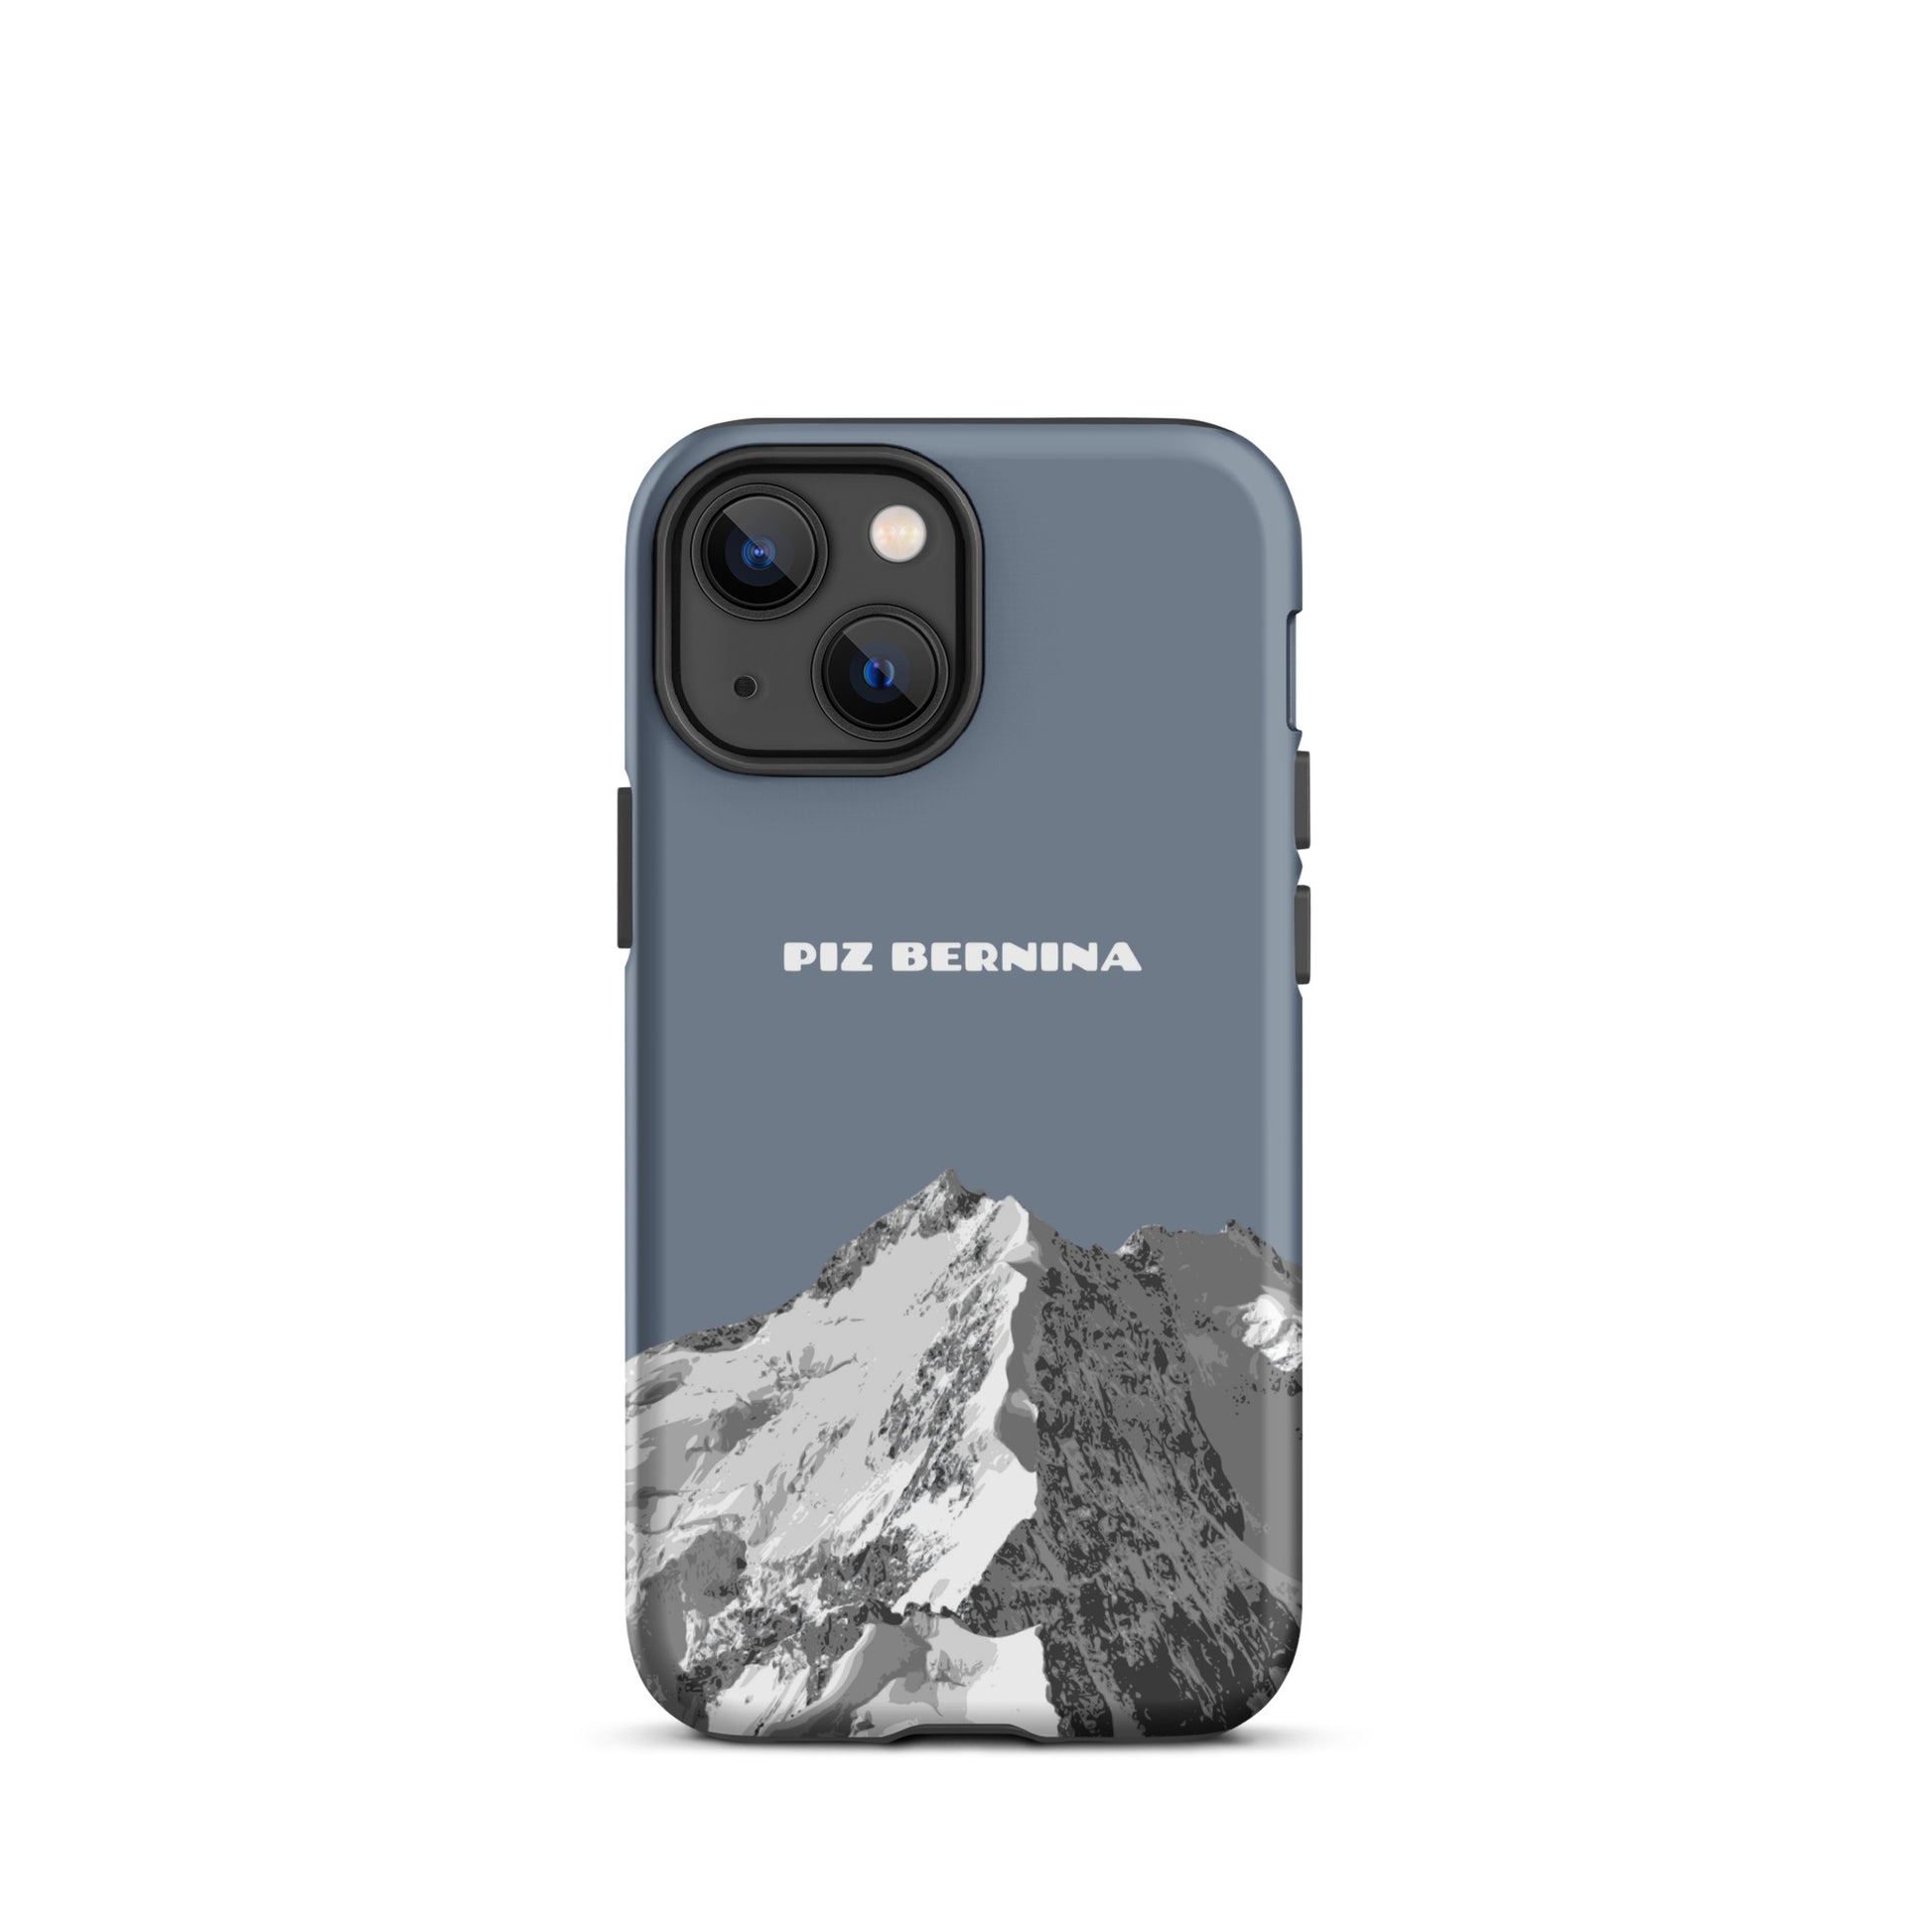 Hülle für das iPhone 13 Mini von Apple in der Farbe Schiefergrau, dass den Piz Bernina in Graubünden zeigt.